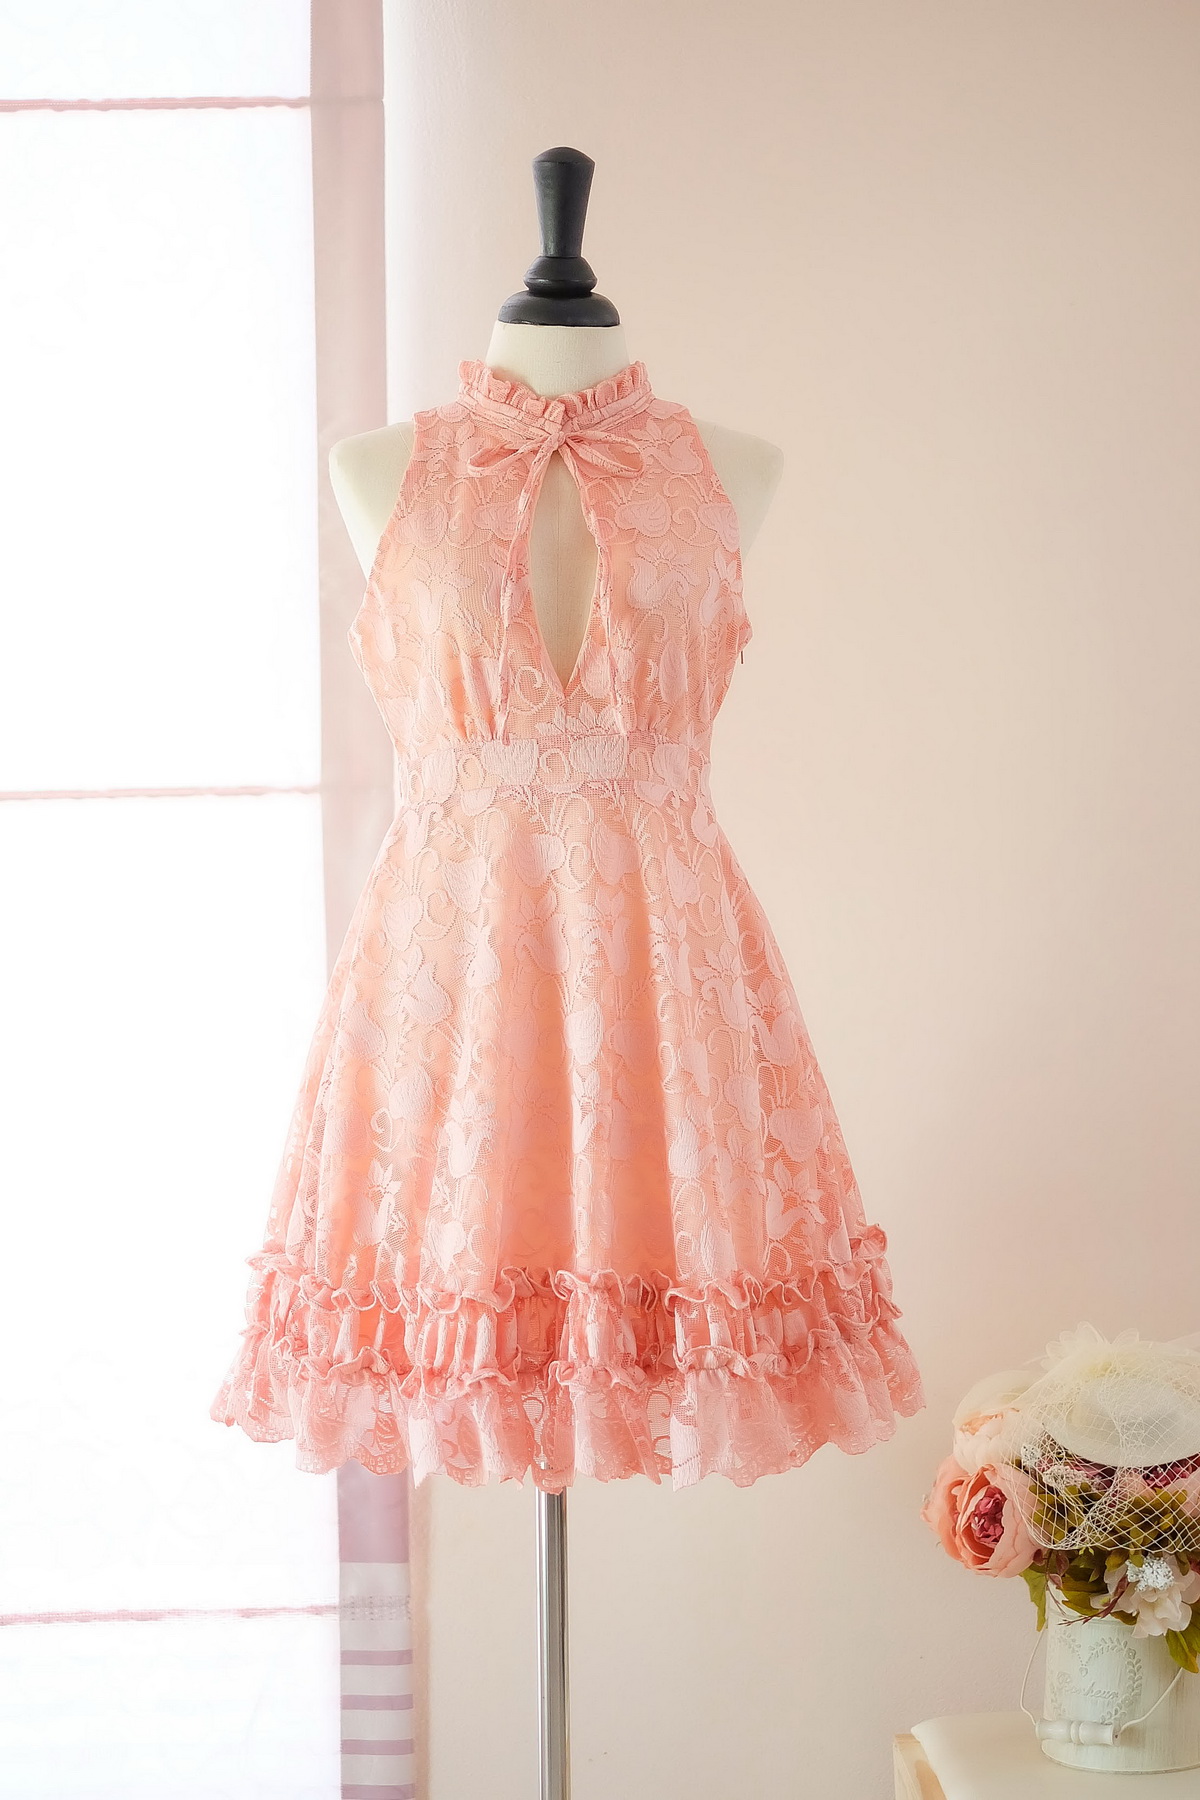 Handmade Dress Marry Sundress Peach Dress Peach Lace Dress Lace Party Dress Prom Dress Peach Bridesmaid Dress Peach Lace Cocktail Dress